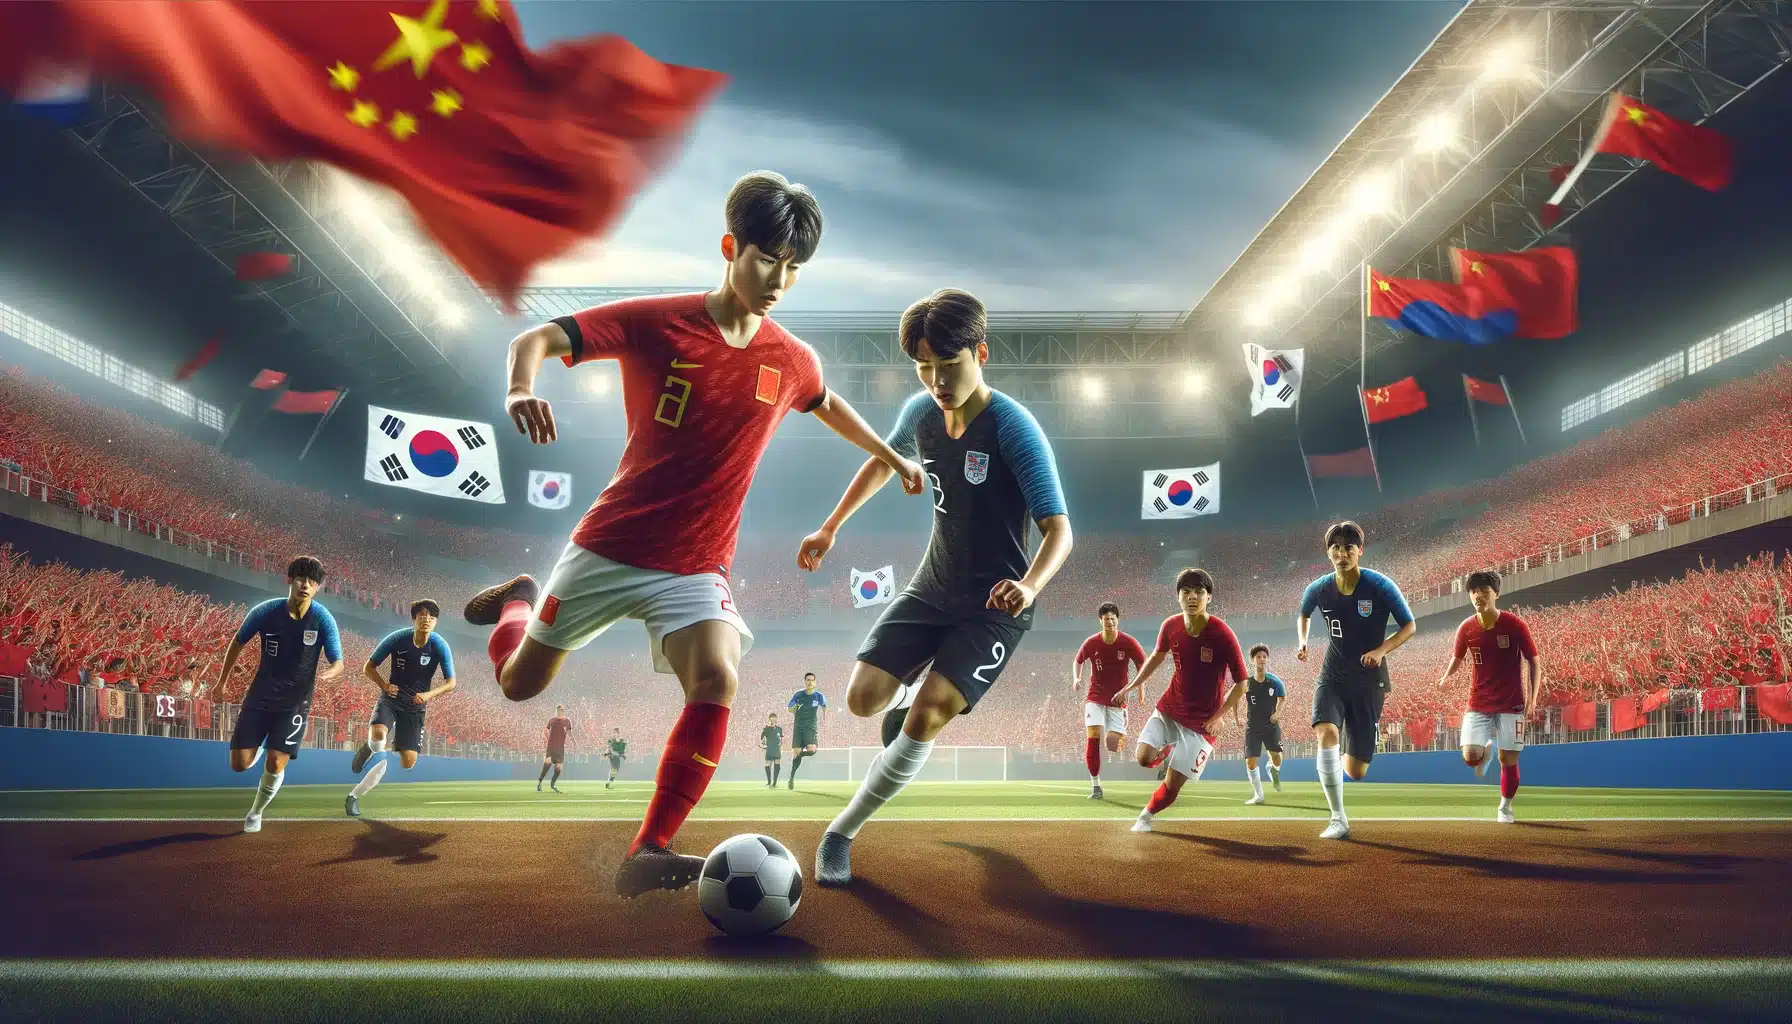 U23 China vs U23 Korea